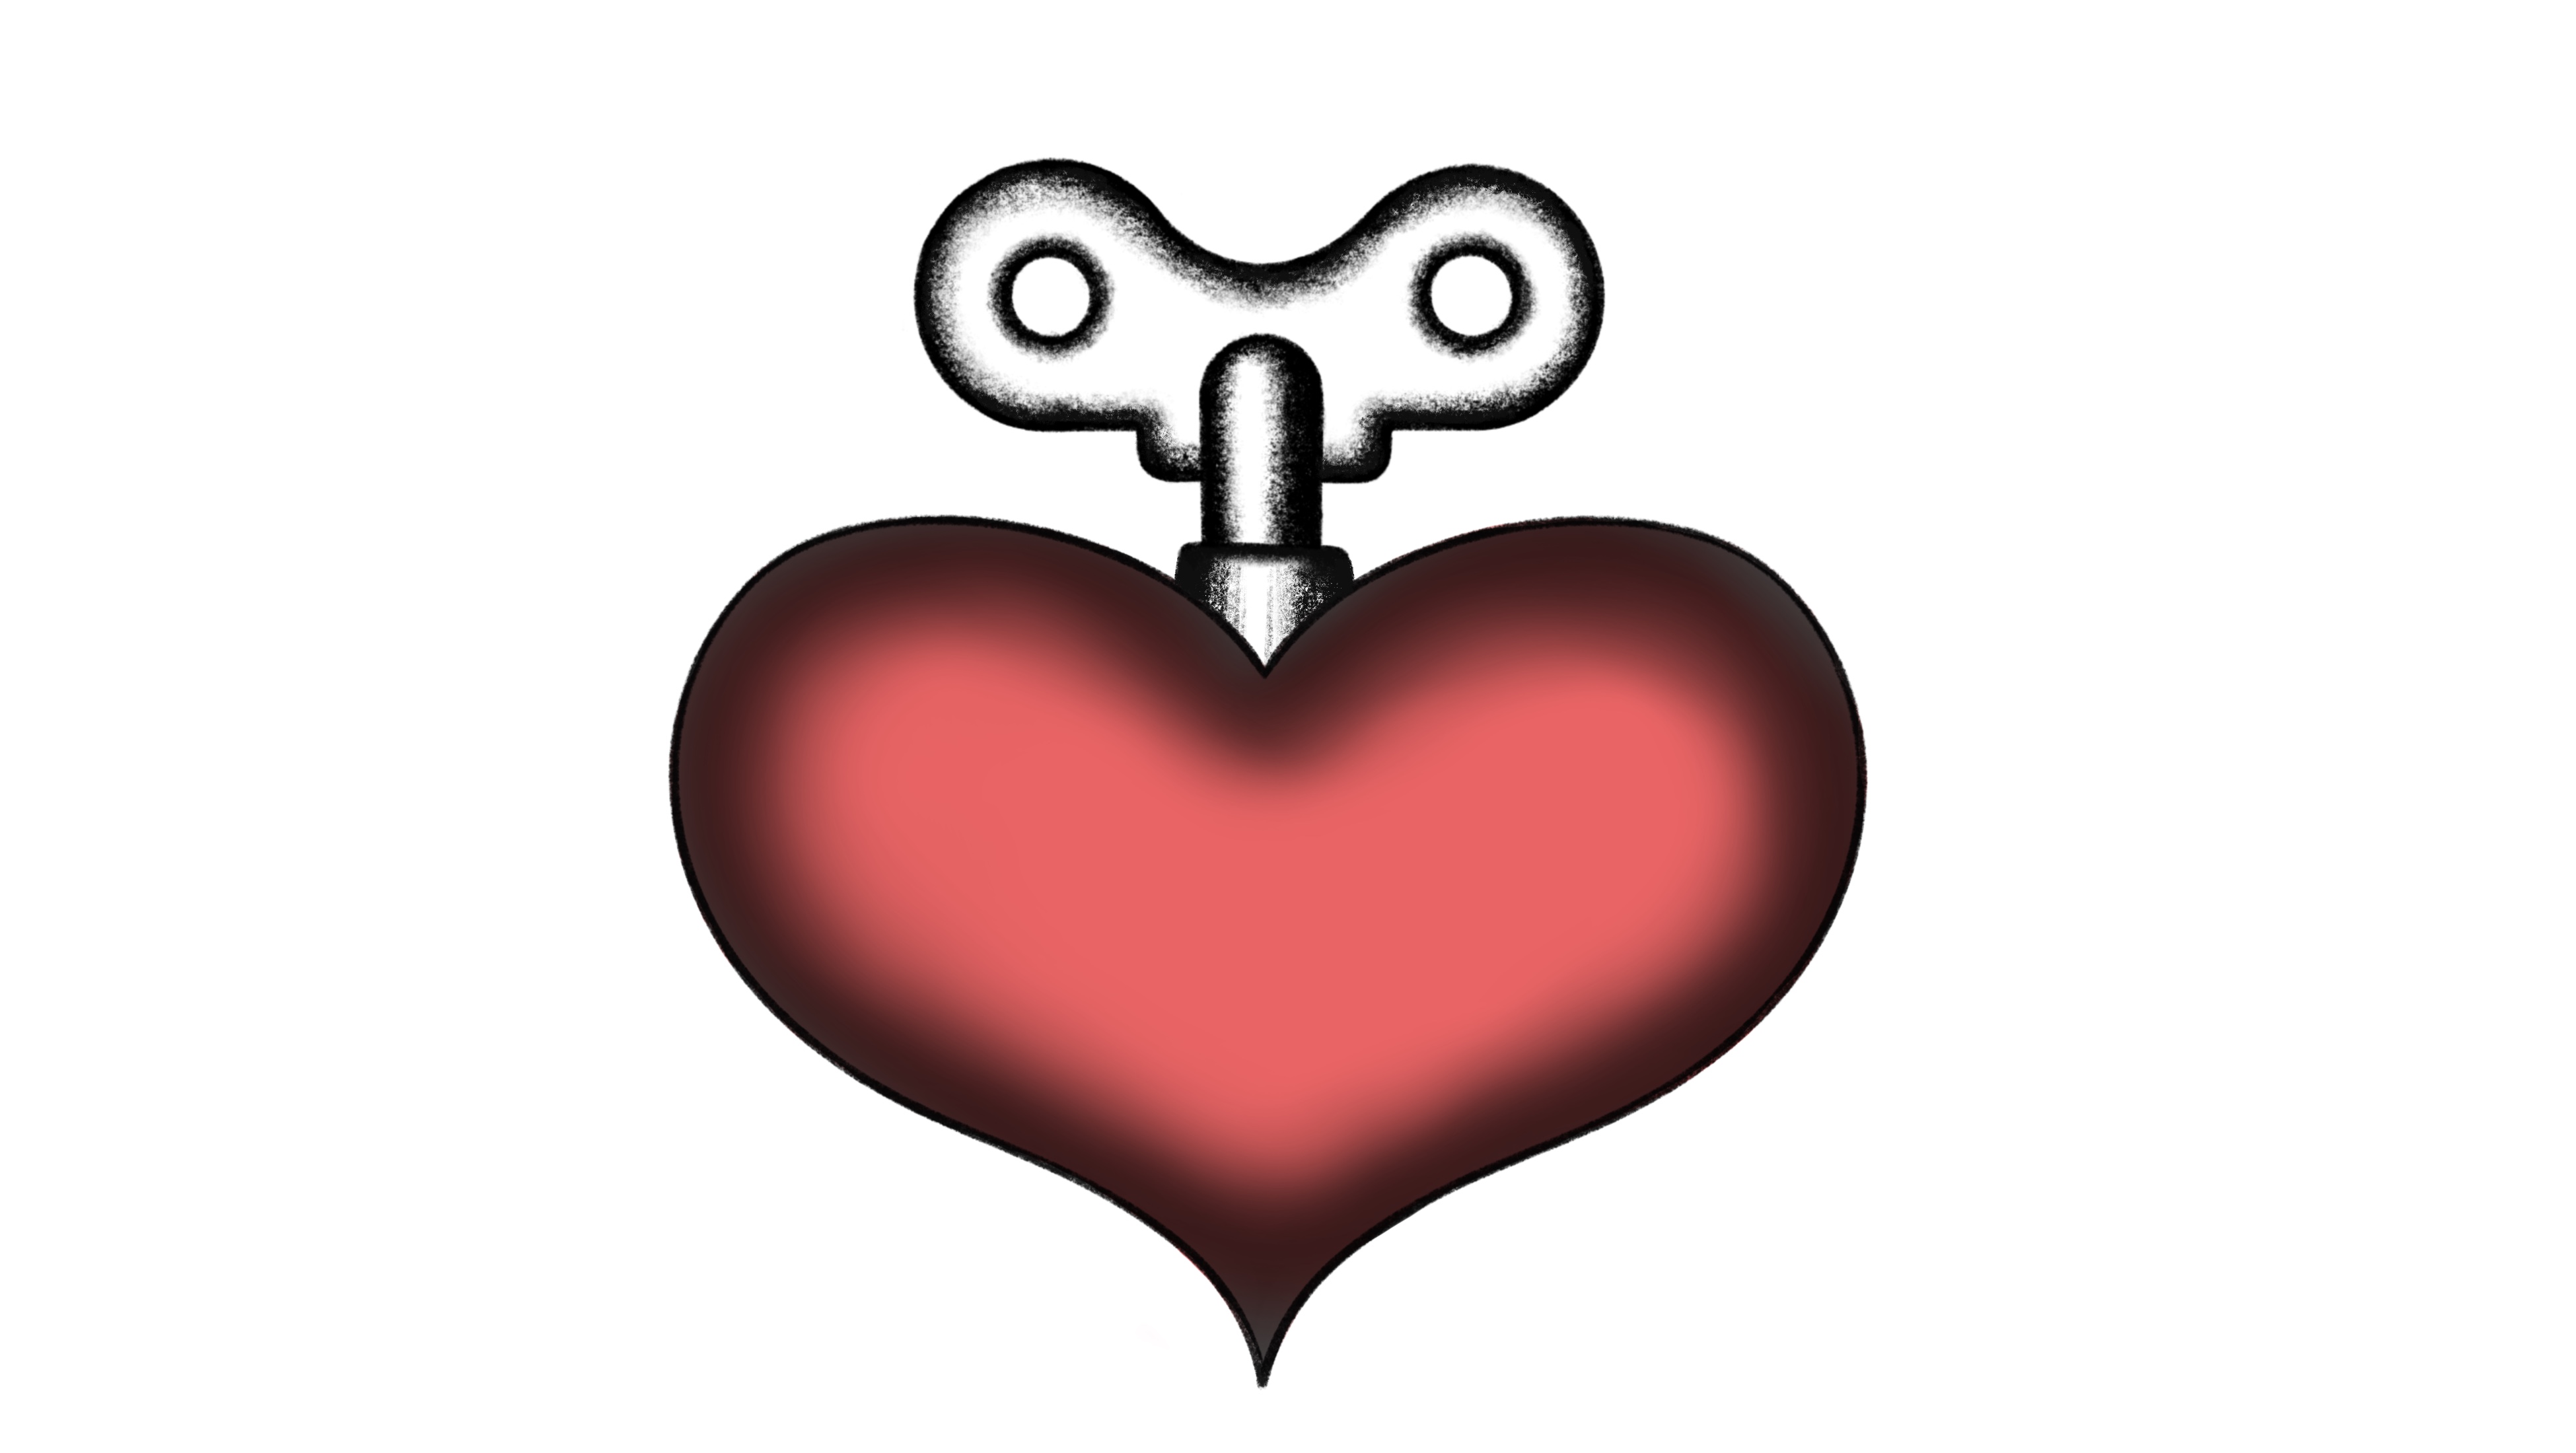 Die Illustration zeigt ein Herz mit einem Aufziehschlüssel das symbolisch darstellt, dass die Herzchirurgie mithilft das Herz am Laufen zu halten.